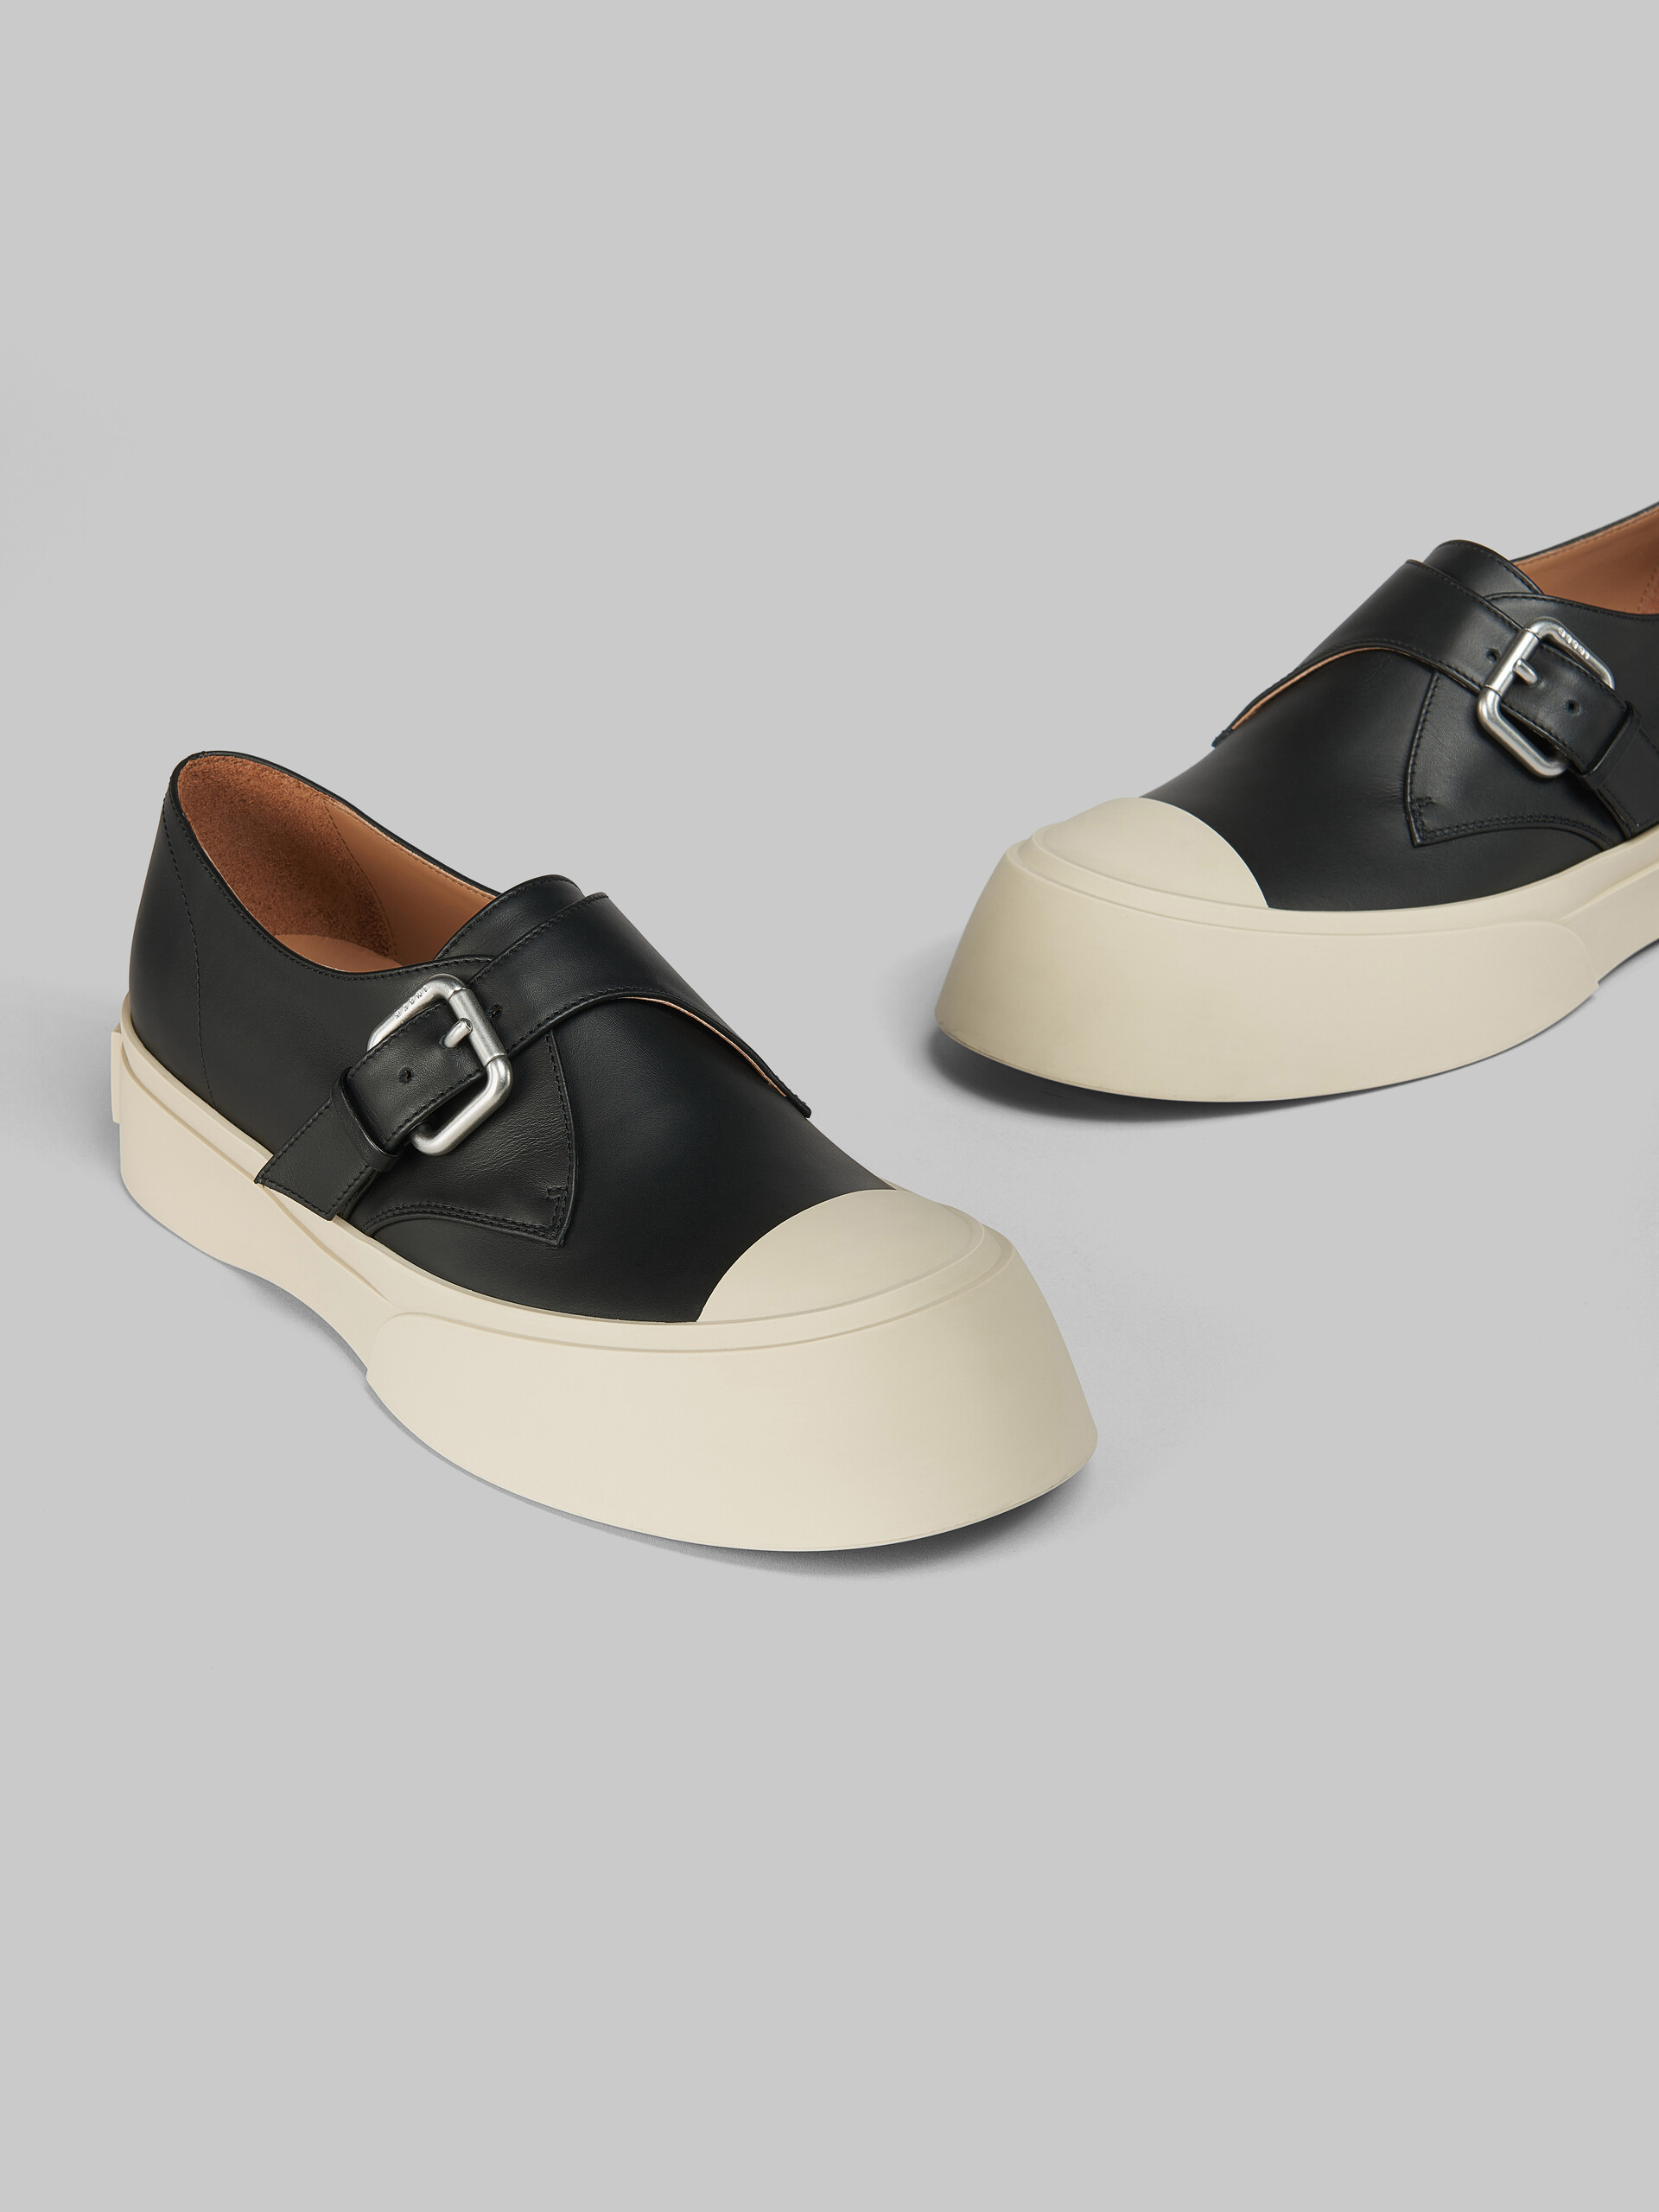 Zapato Pablo con cierre de hebilla de piel negra - Sneakers - Image 5